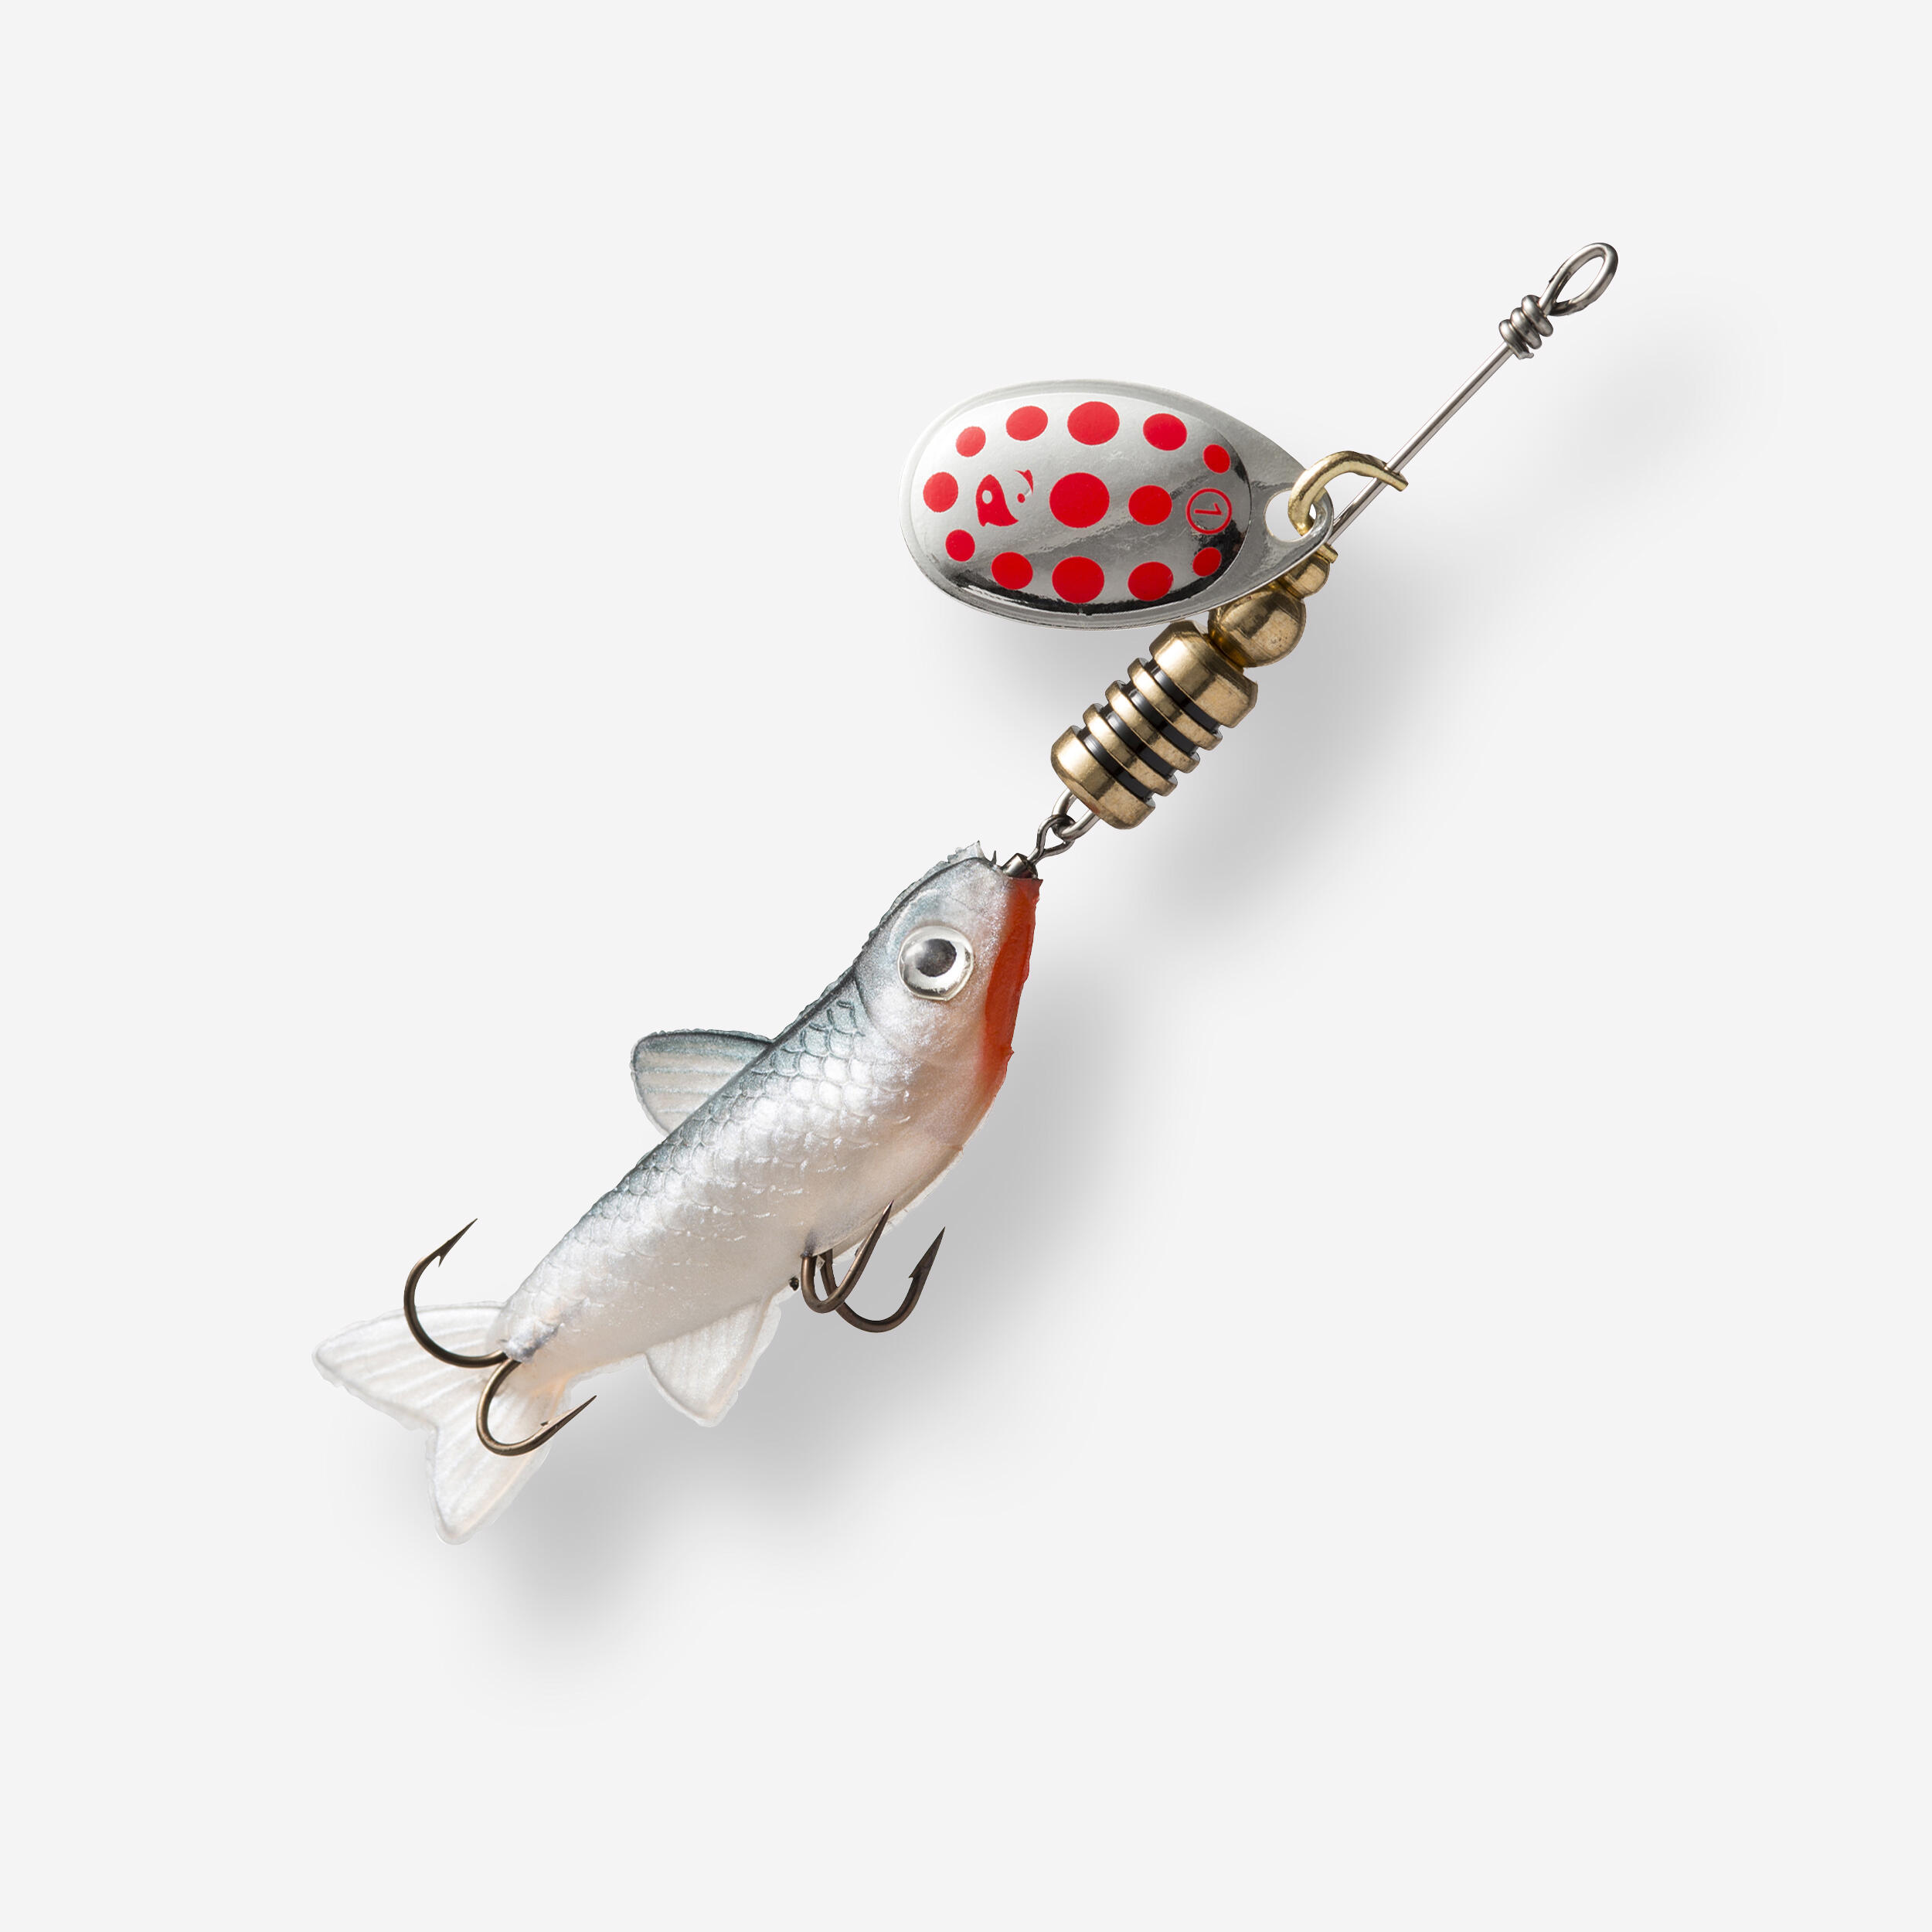 cucharillas de pesca